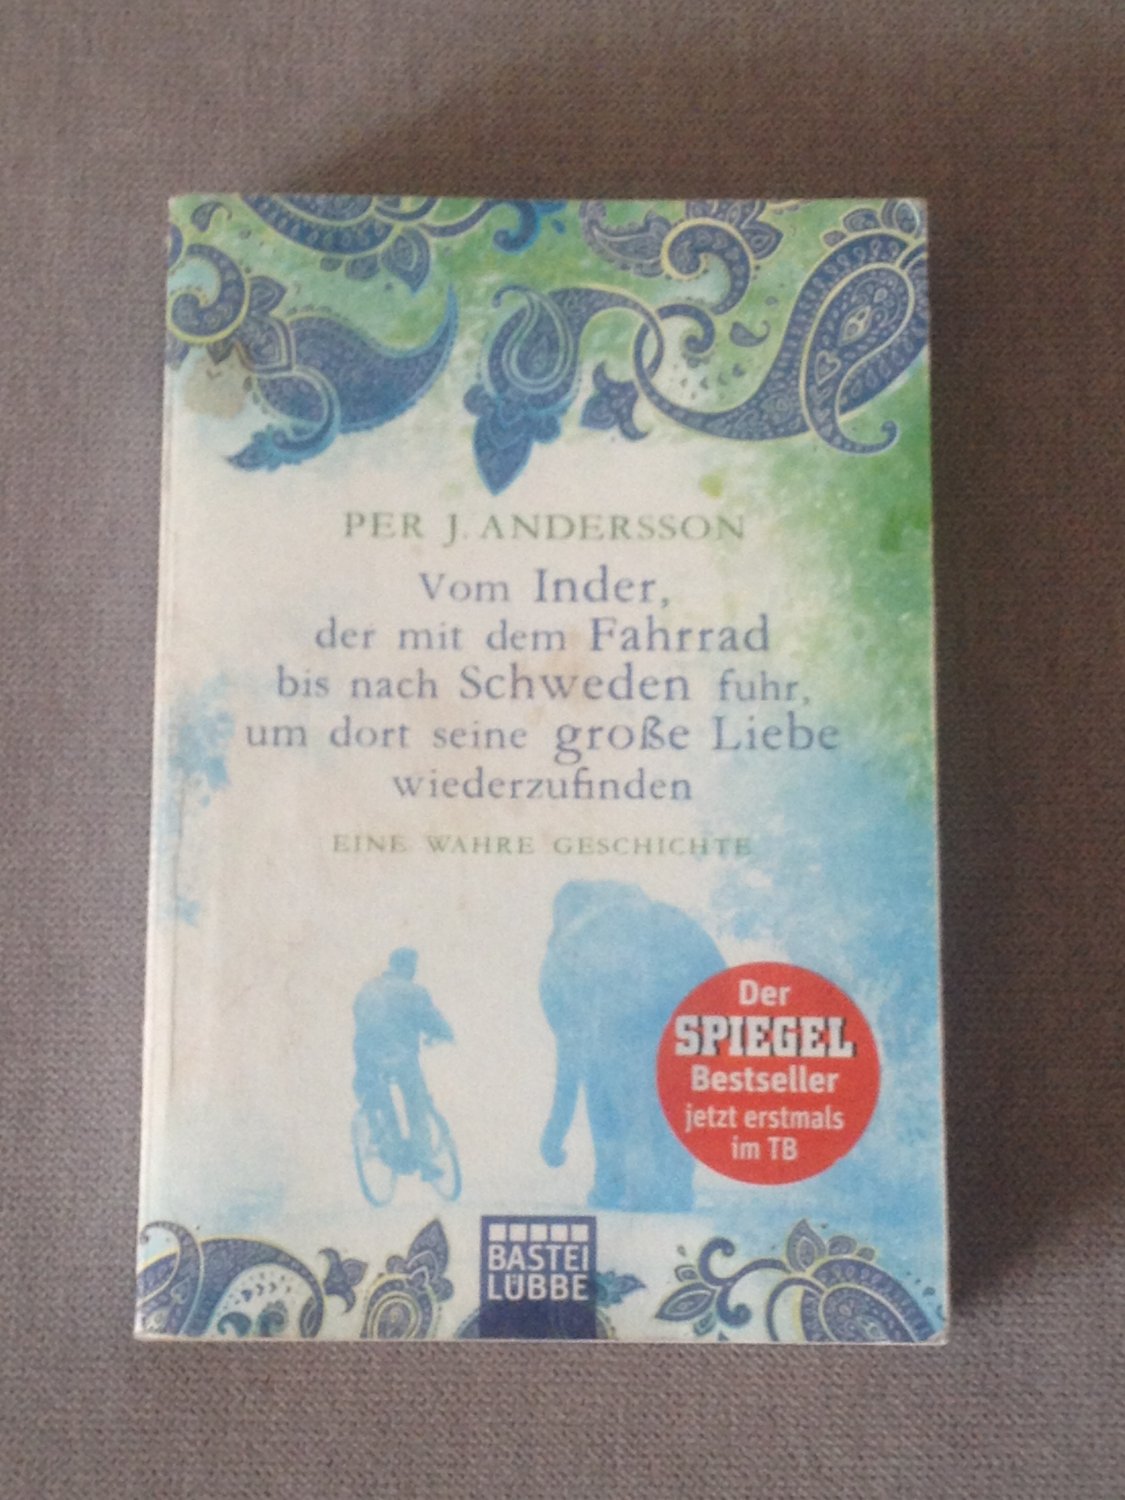 ISBN 9783404608850 "Vom Inder, der mit dem Fahrrad bis